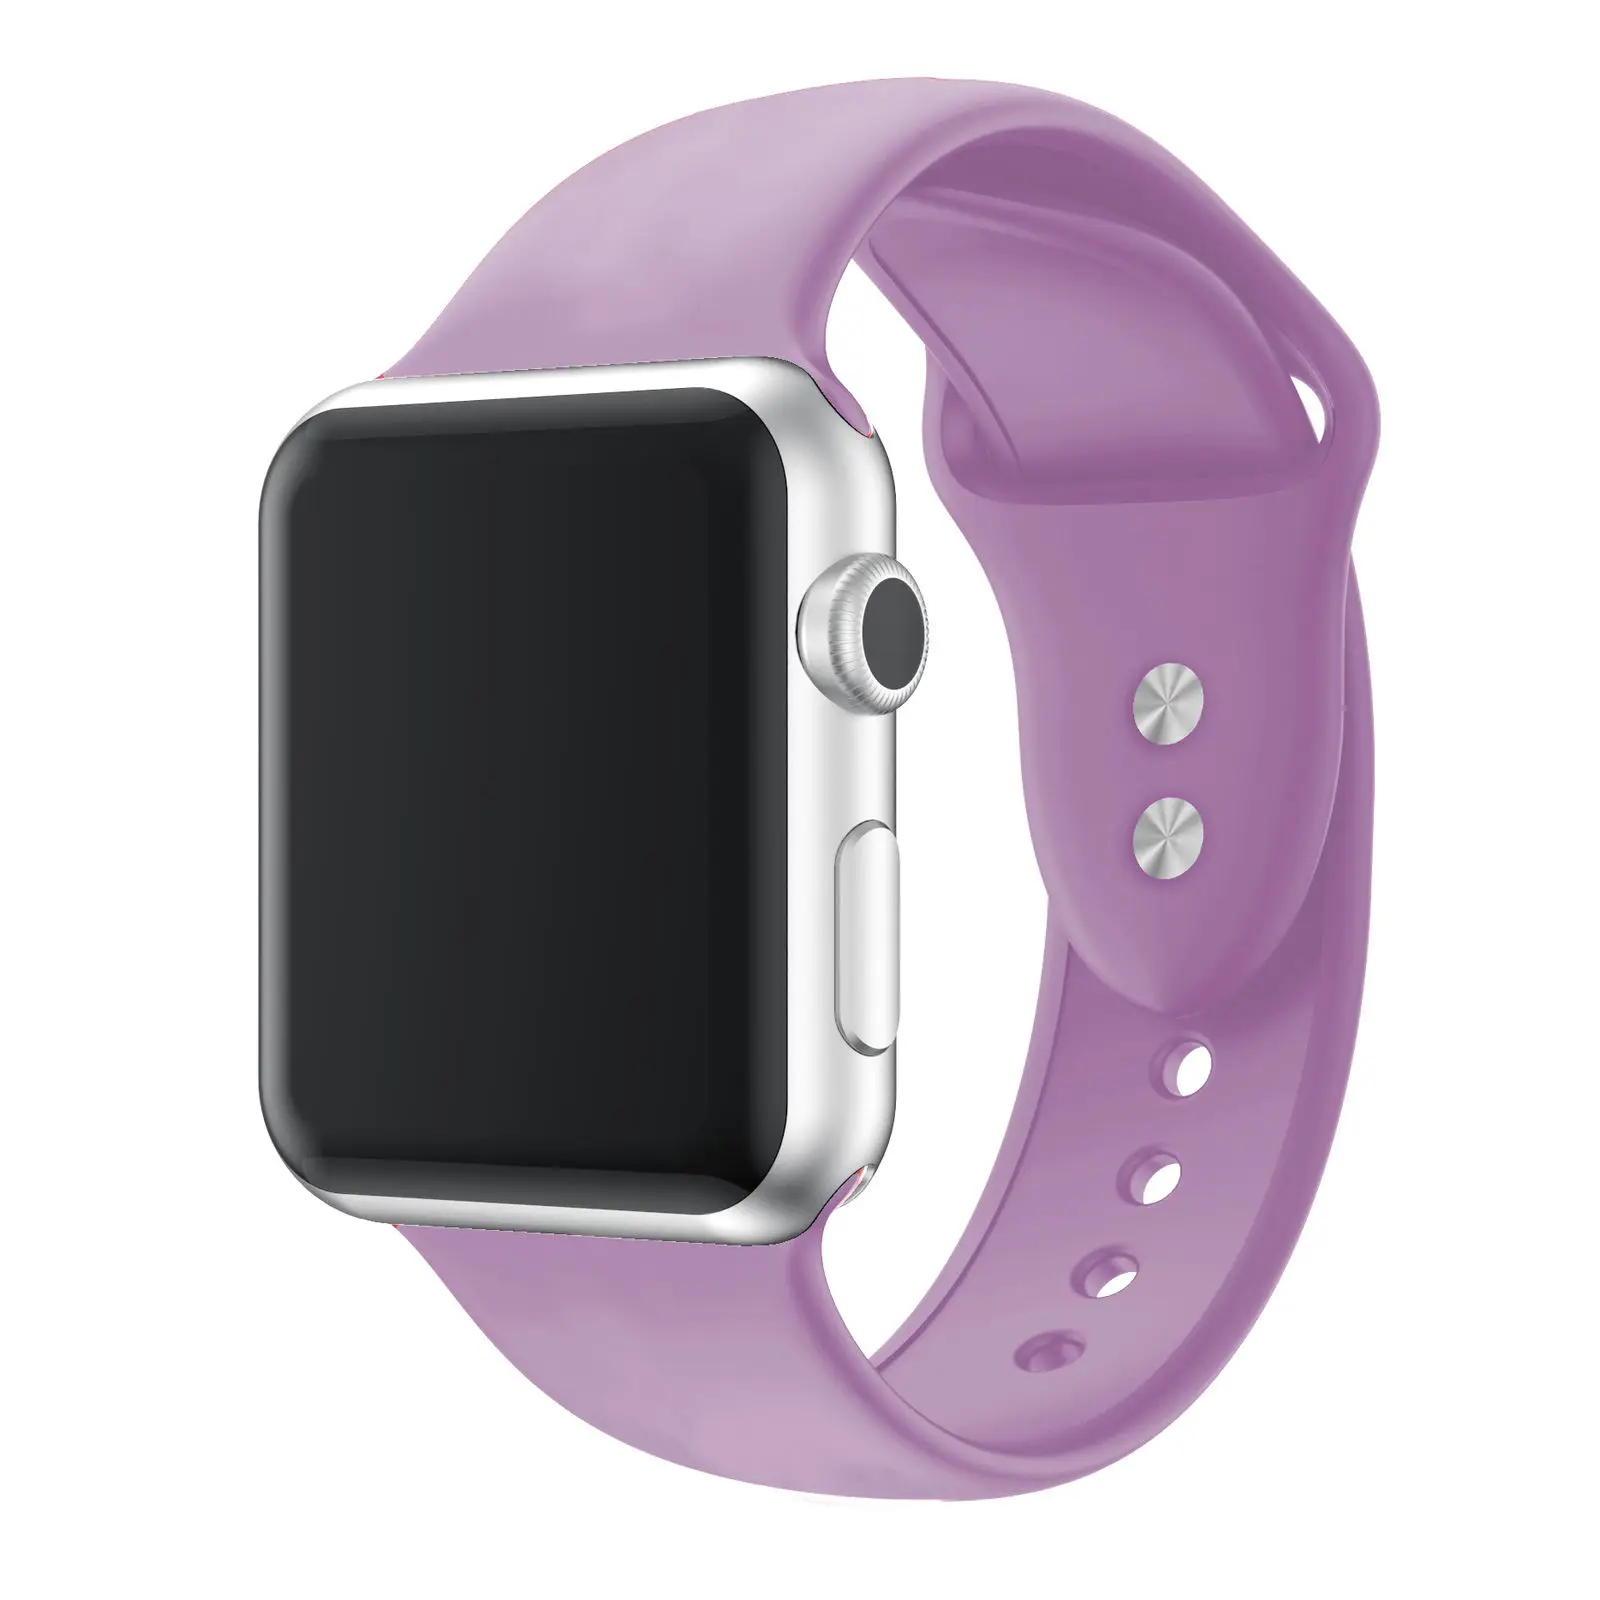 19 цветов силиконовый ремешок на запястье браслет Замена для Apple Watch iWatch серия 3/2 38 мм 42 мм - Цвет: Q